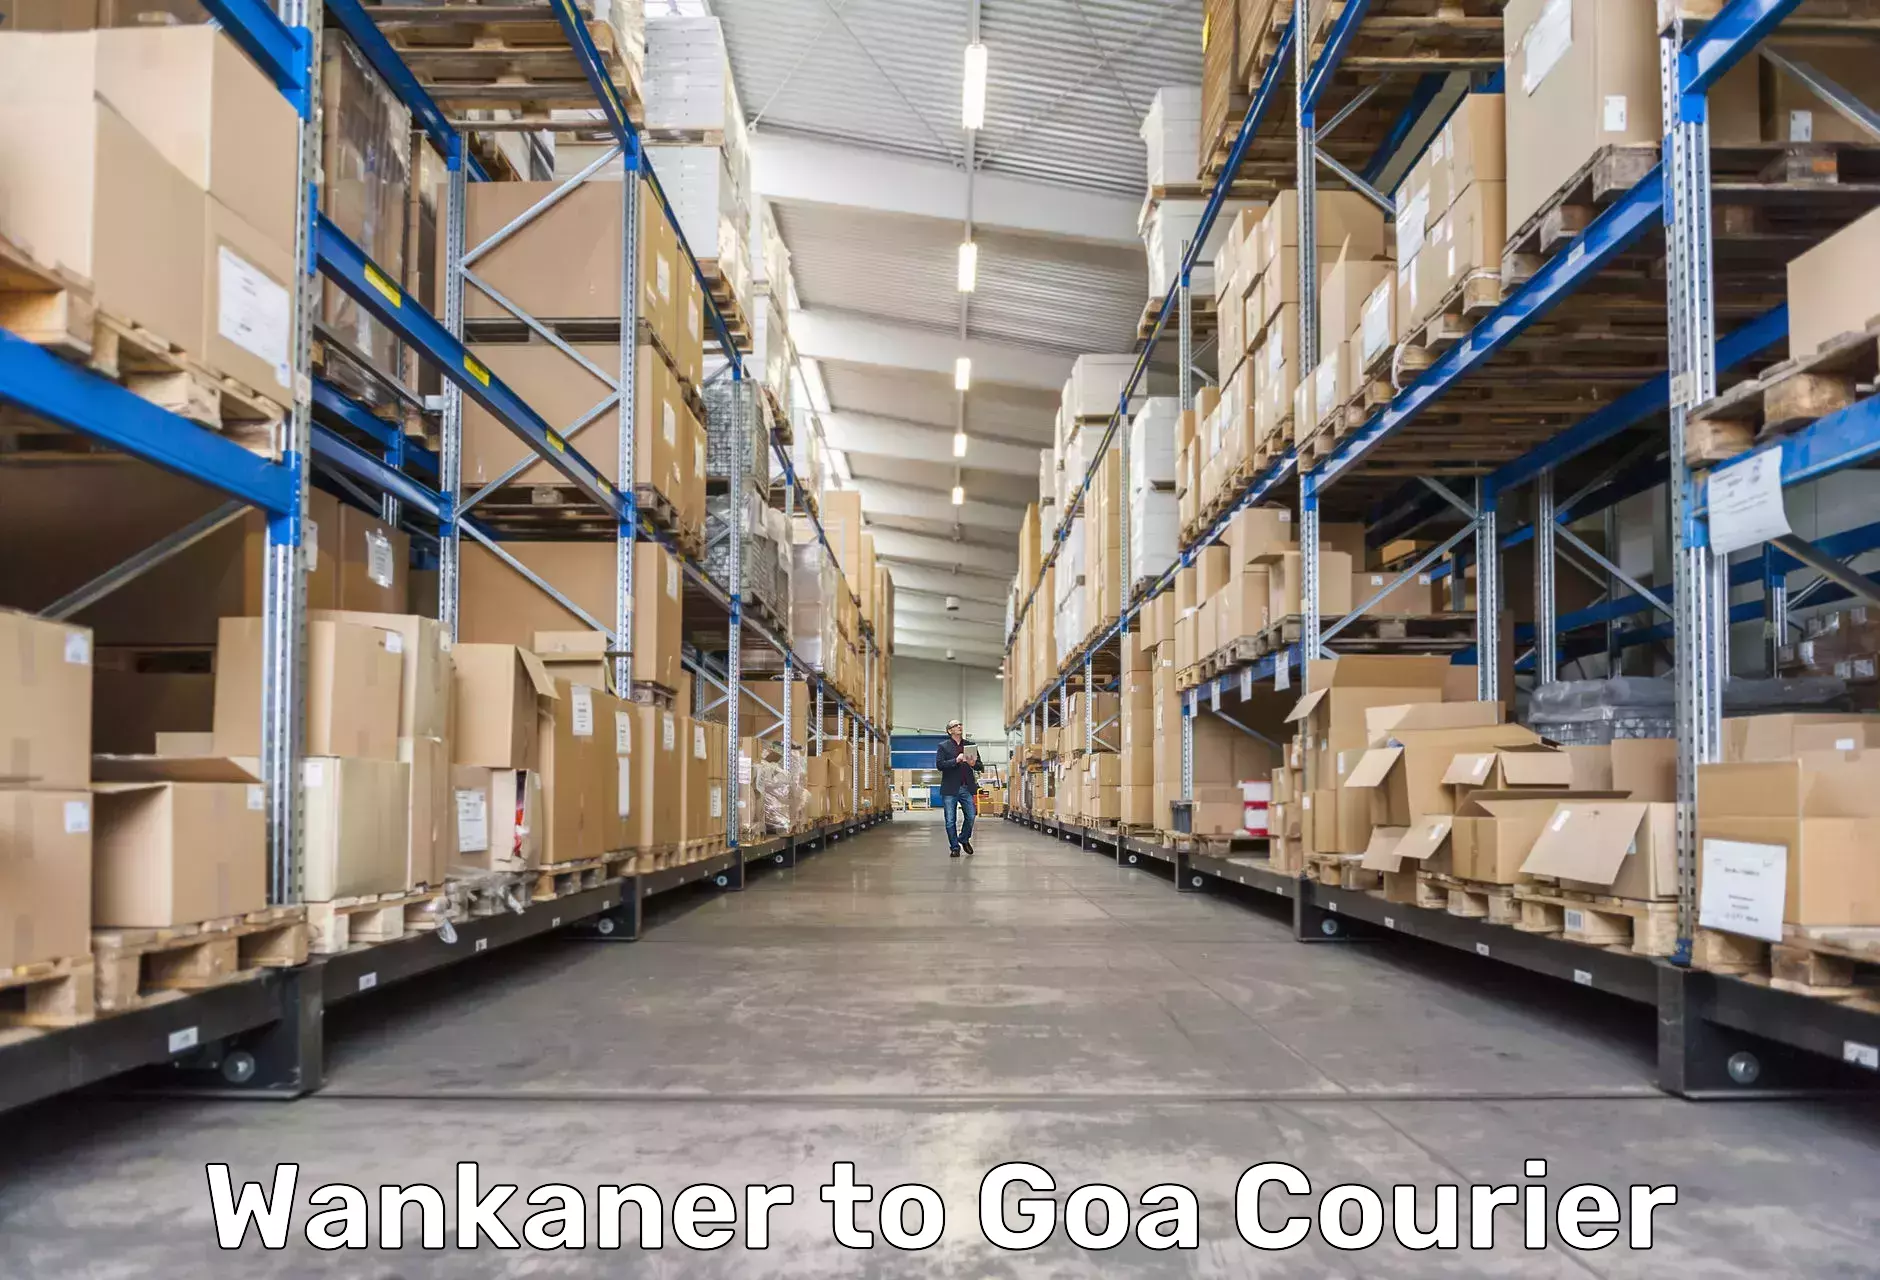 Enhanced tracking features Wankaner to IIT Goa